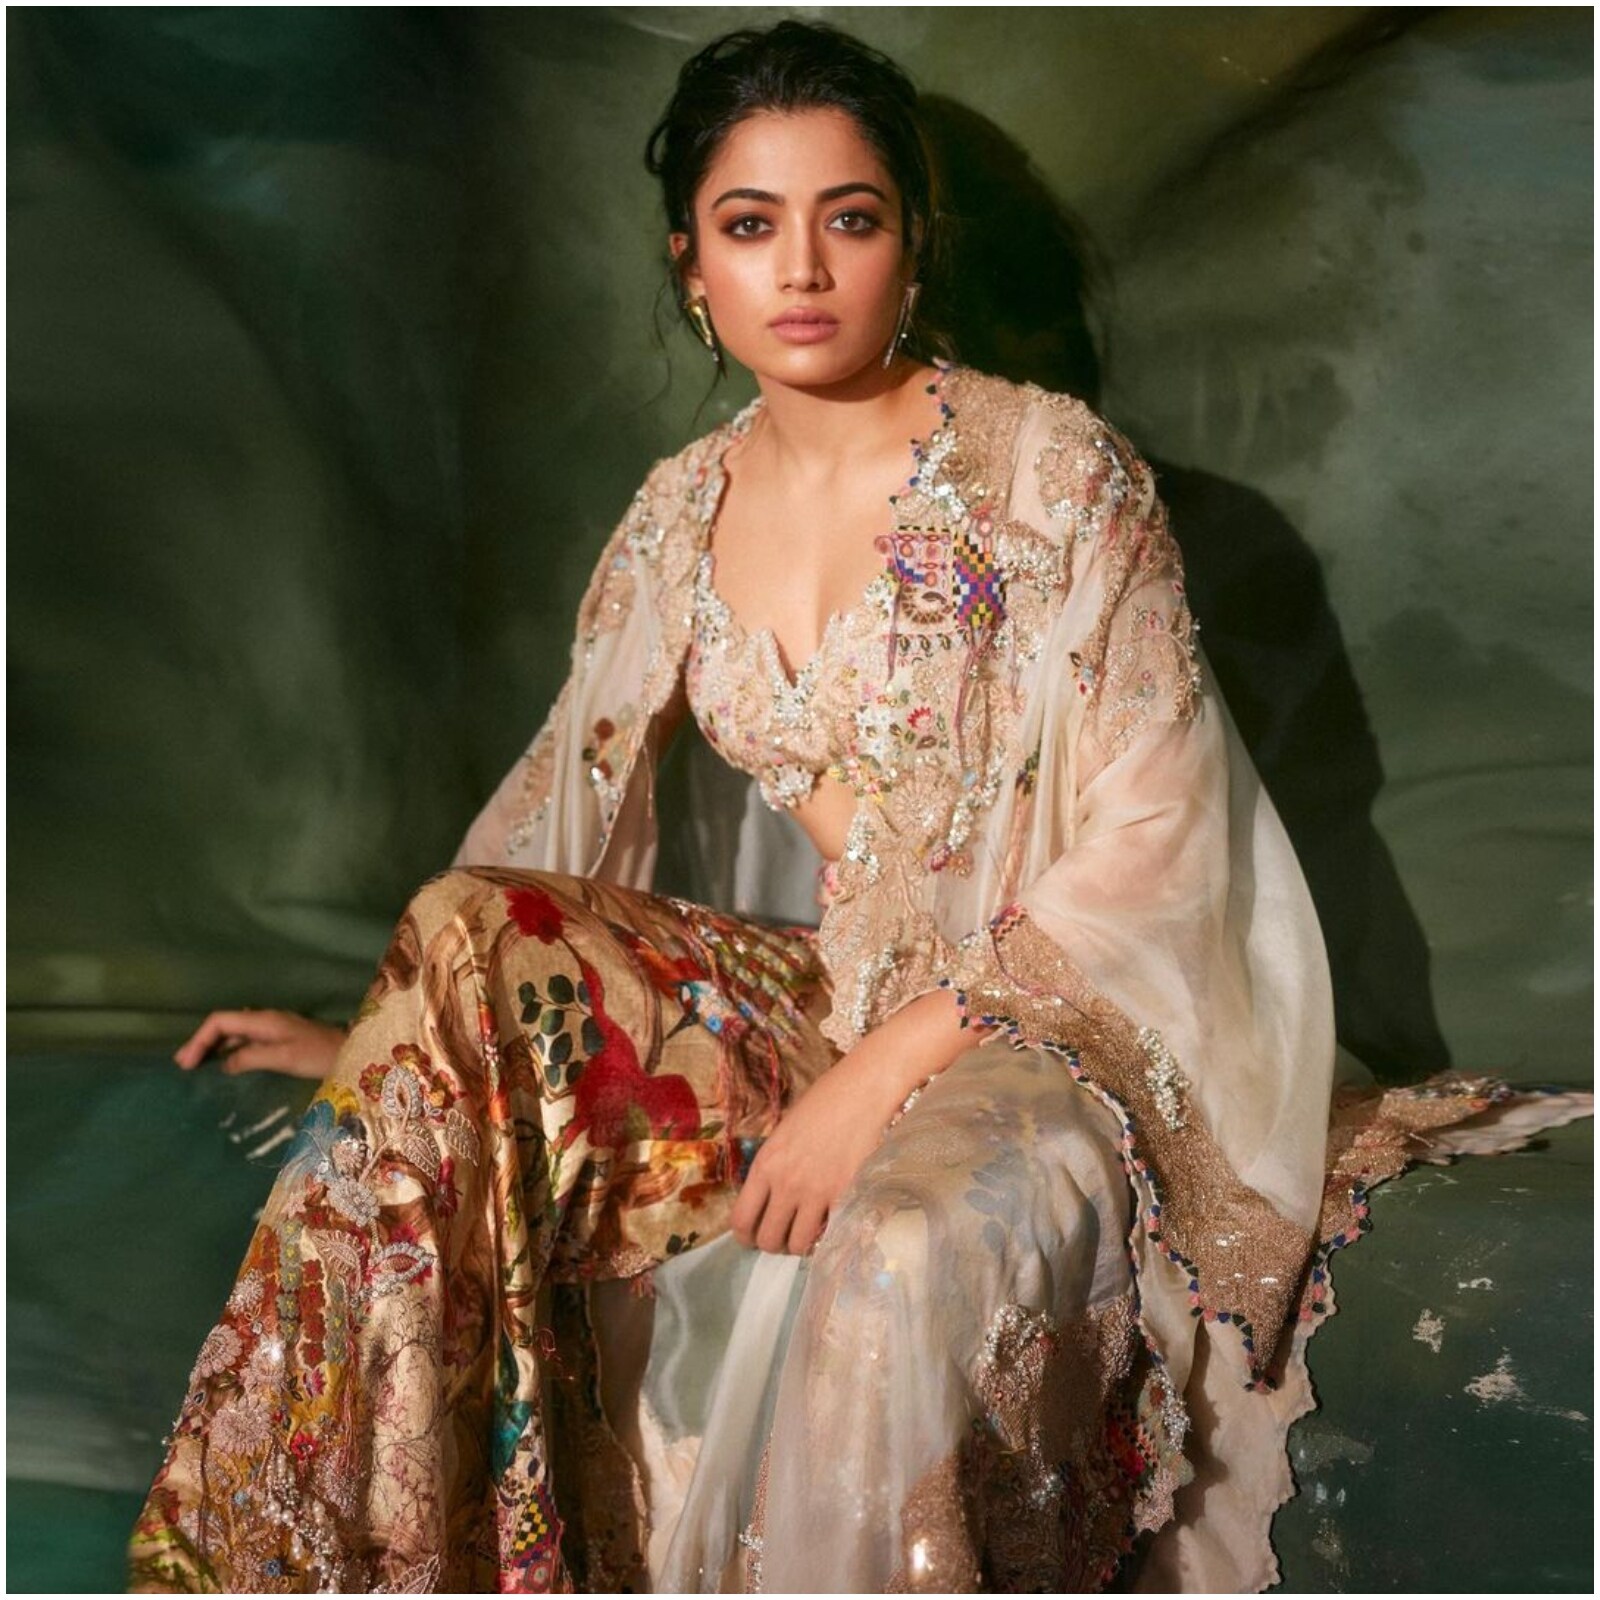 What are the best saree pictures of Sushmita Sen? - Quora